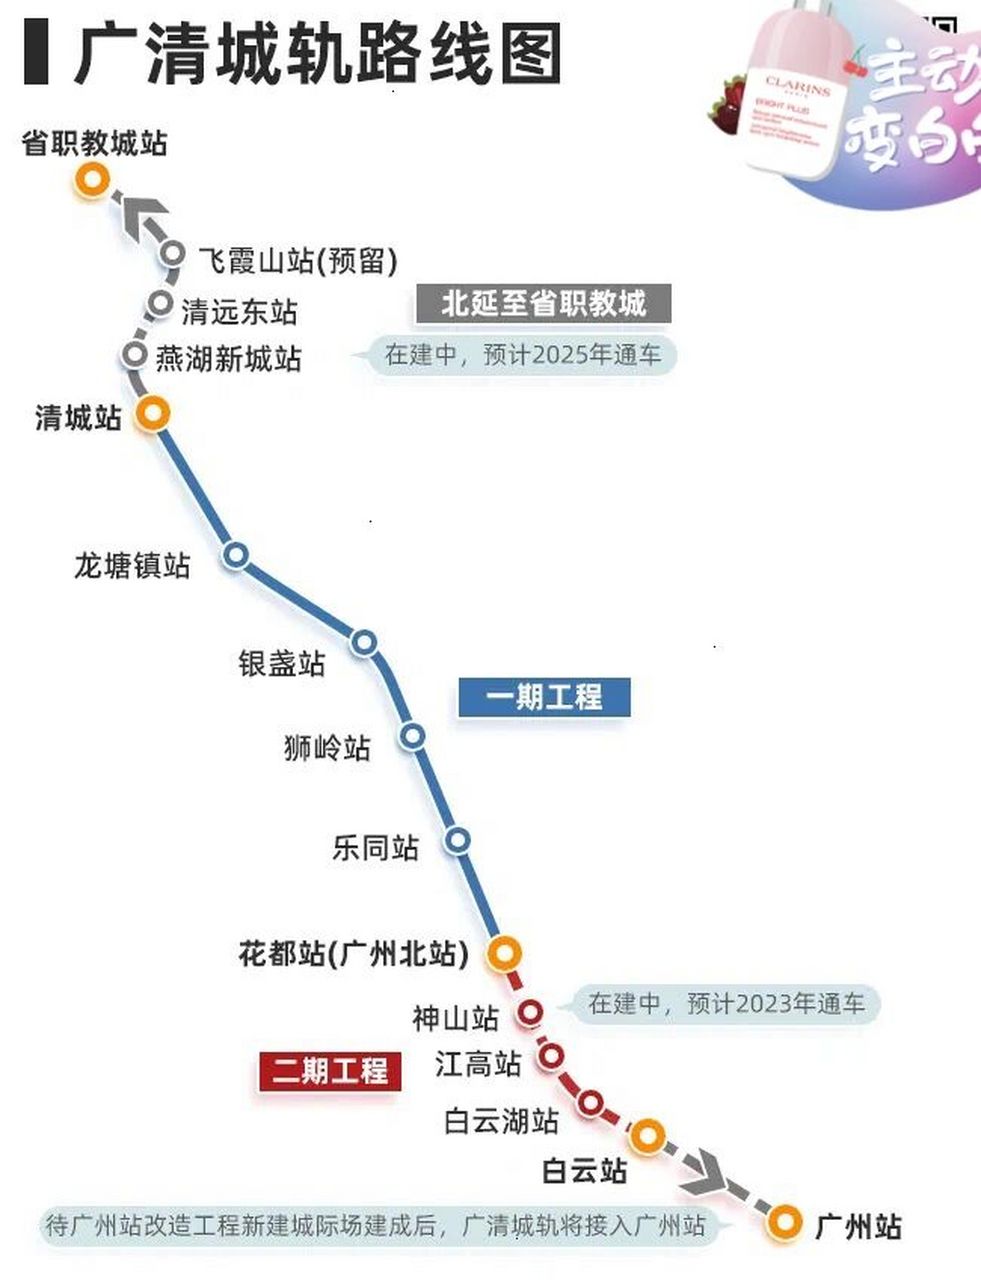 东莞西站线路图片